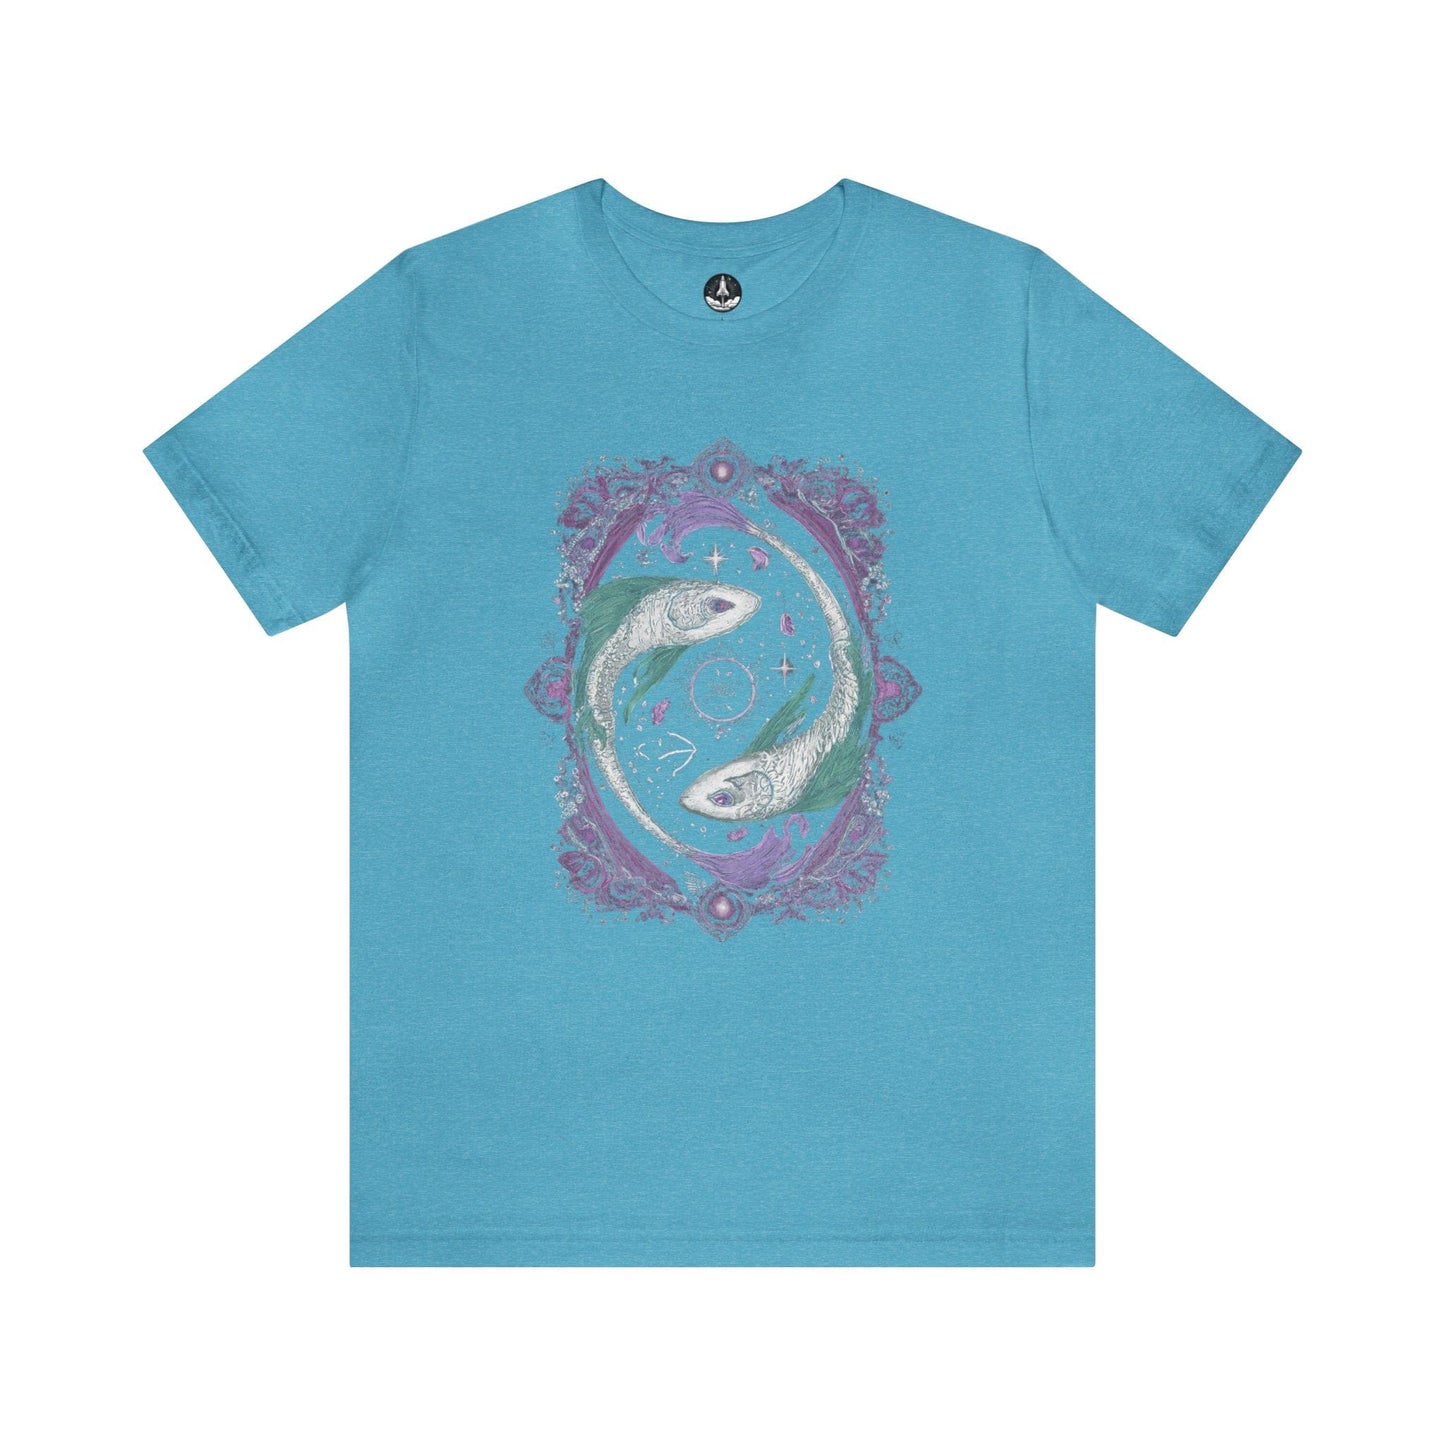 T-Shirt Heather Aqua / S The Moonlit Pisces T-Shirt